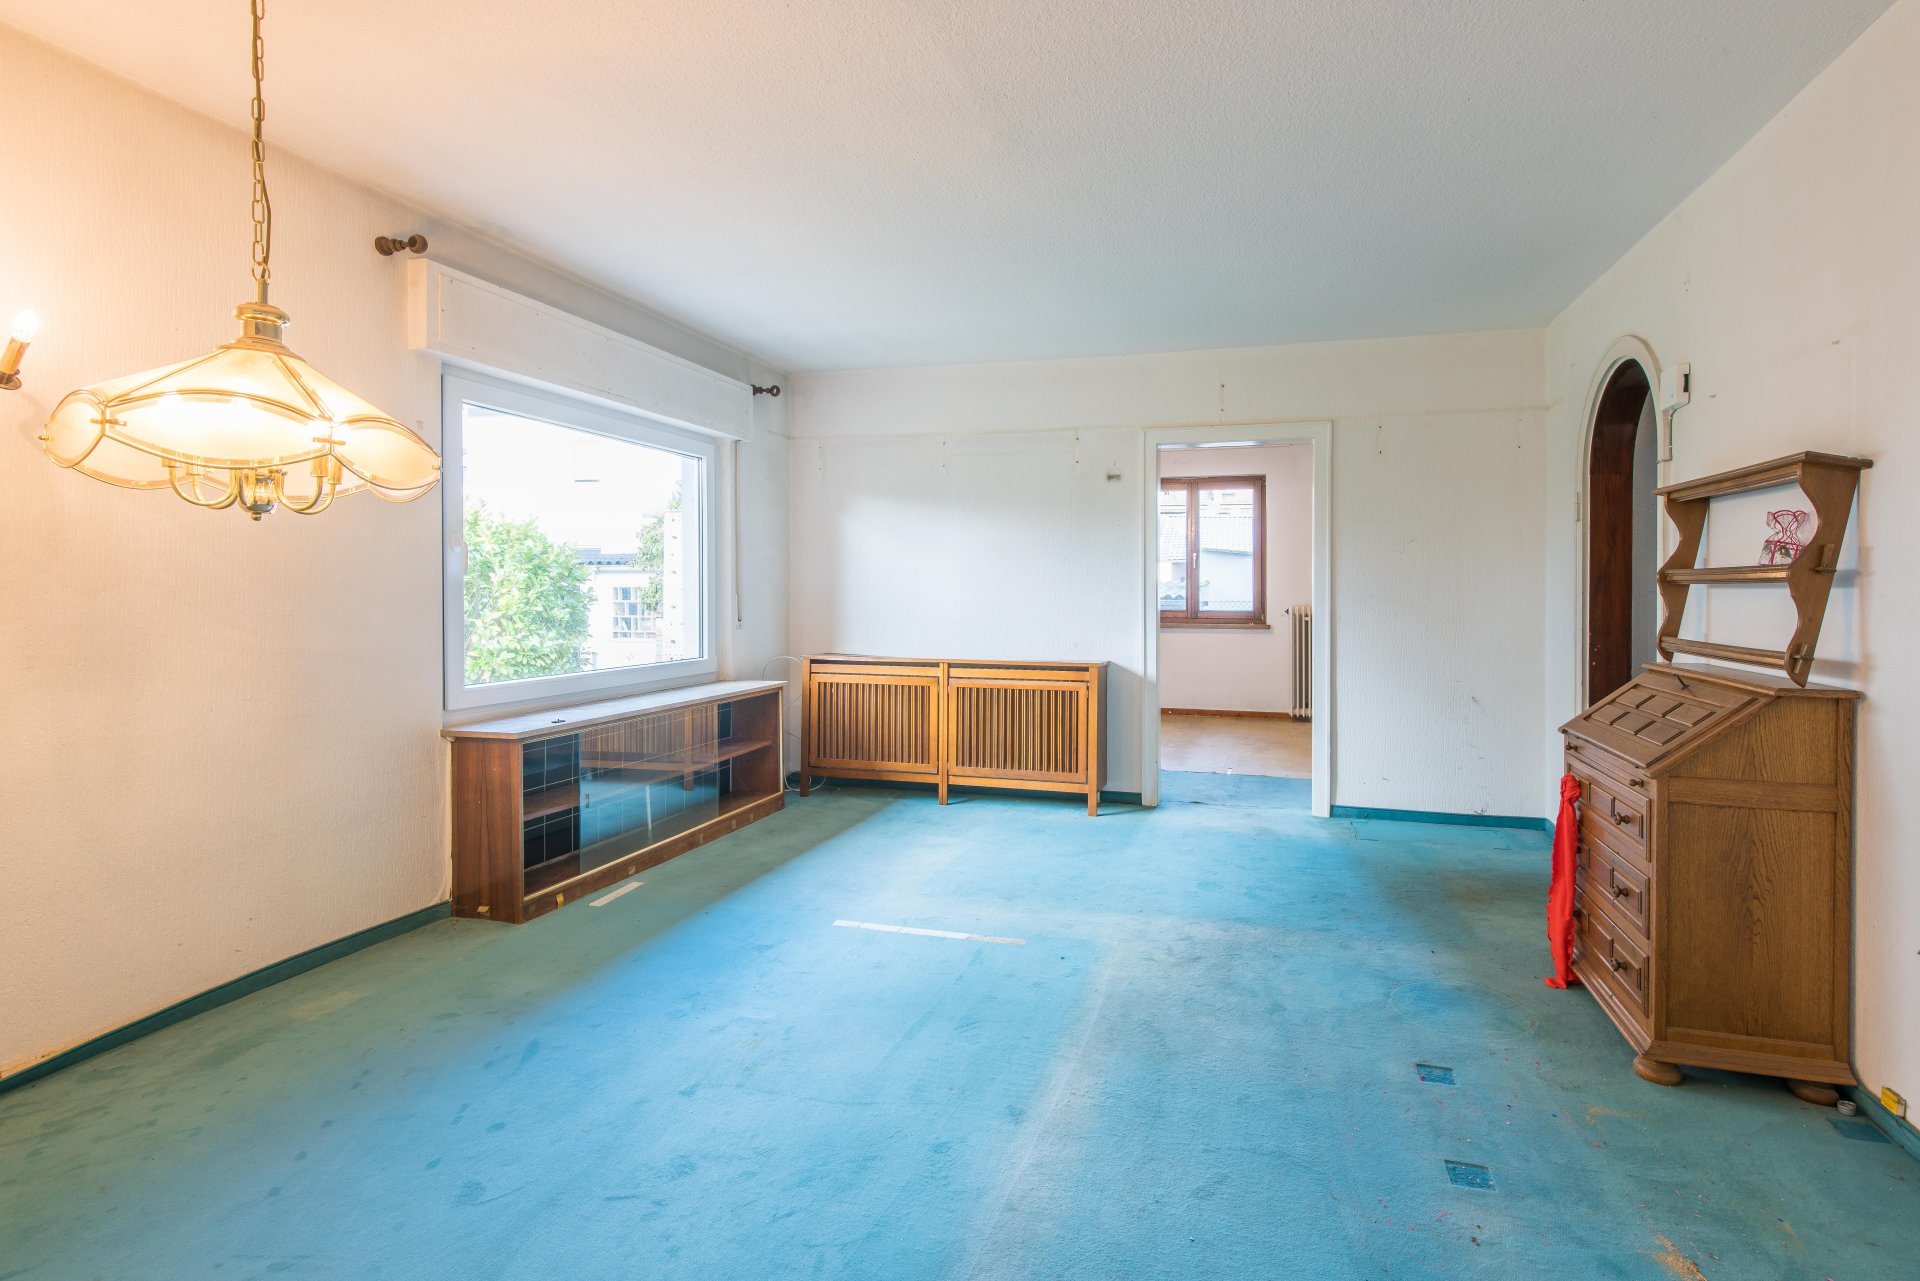 Halboffener Esszimmerbereich mit schönen Vintage-Einbauten  - Oliver Reifferscheid - Immobilienmakler Darmstadt